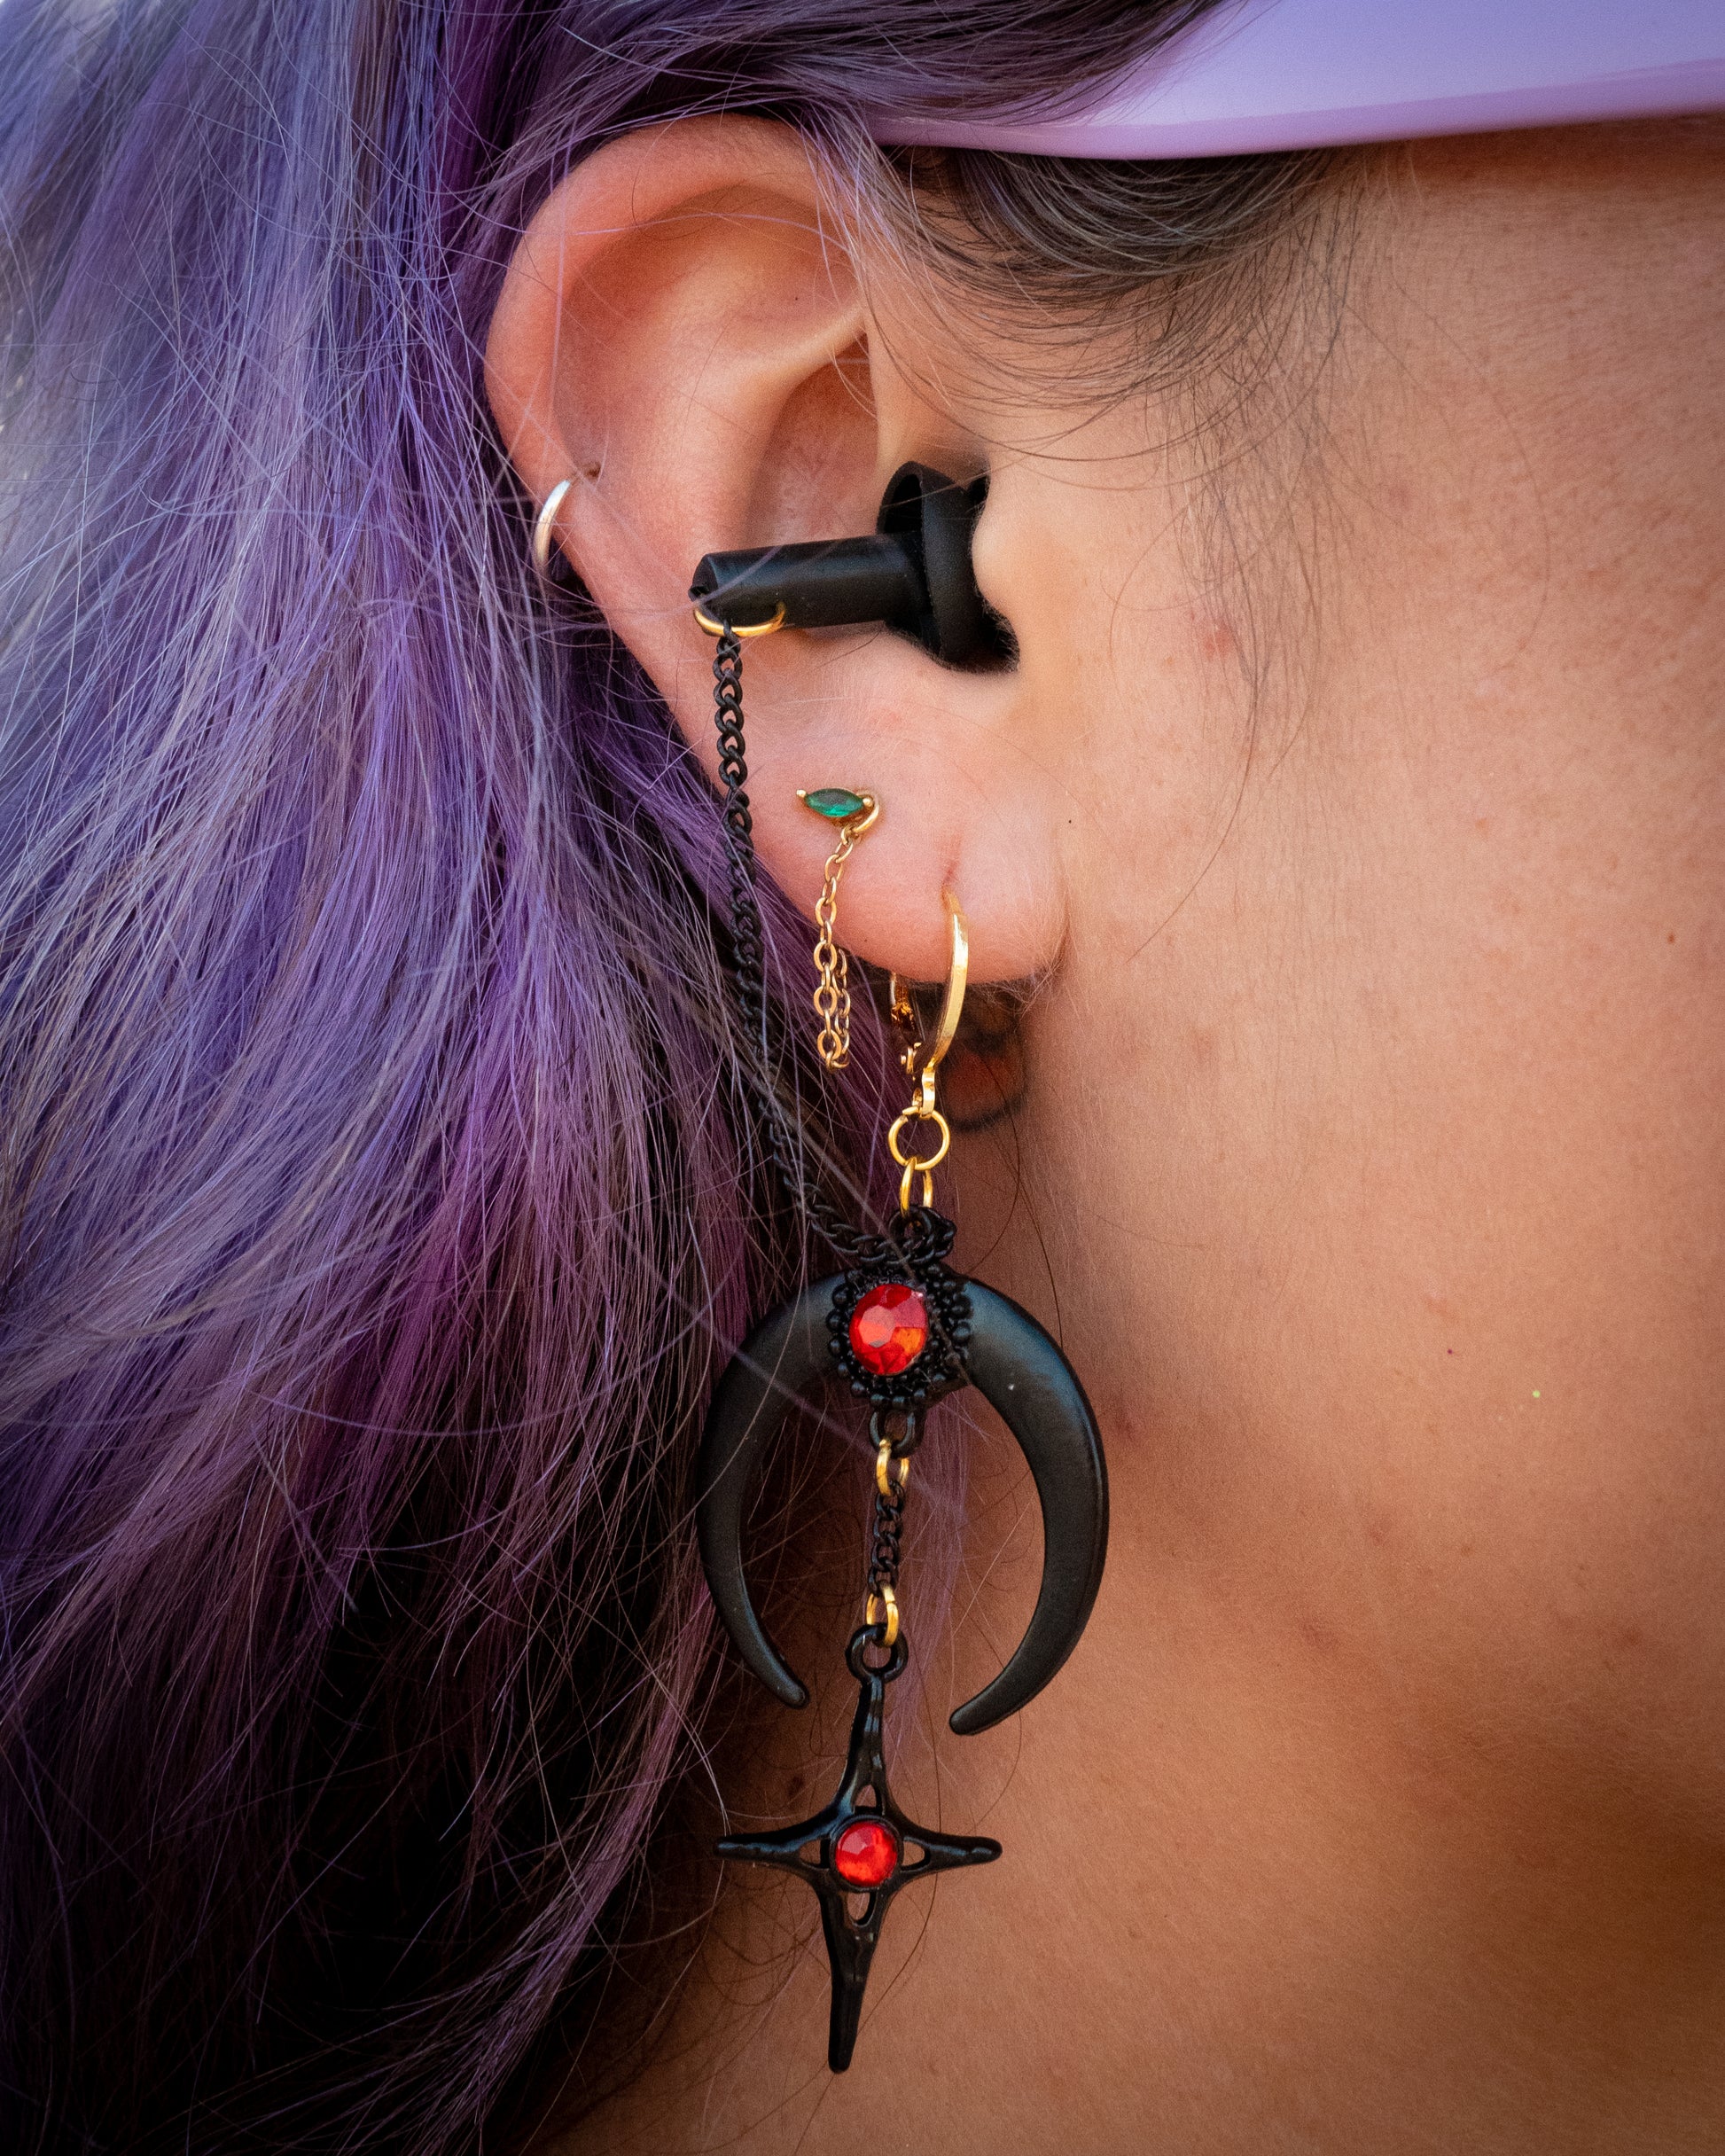 Goth Earplug earrings